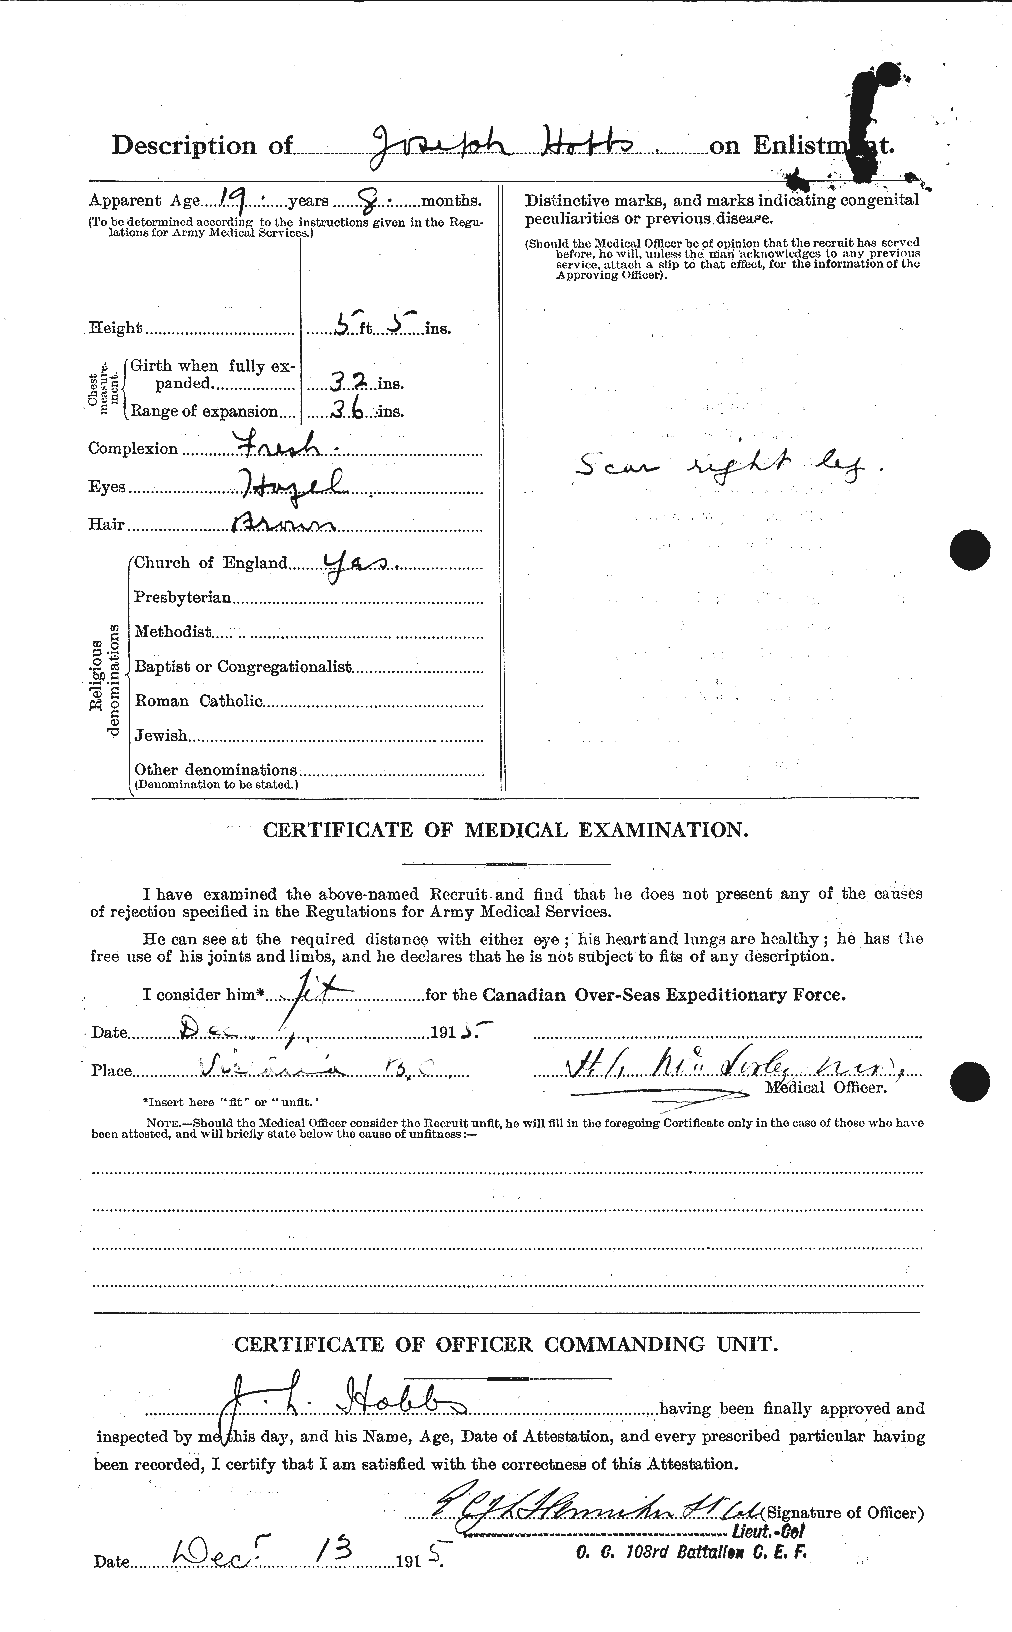 Dossiers du Personnel de la Première Guerre mondiale - CEC 394982b